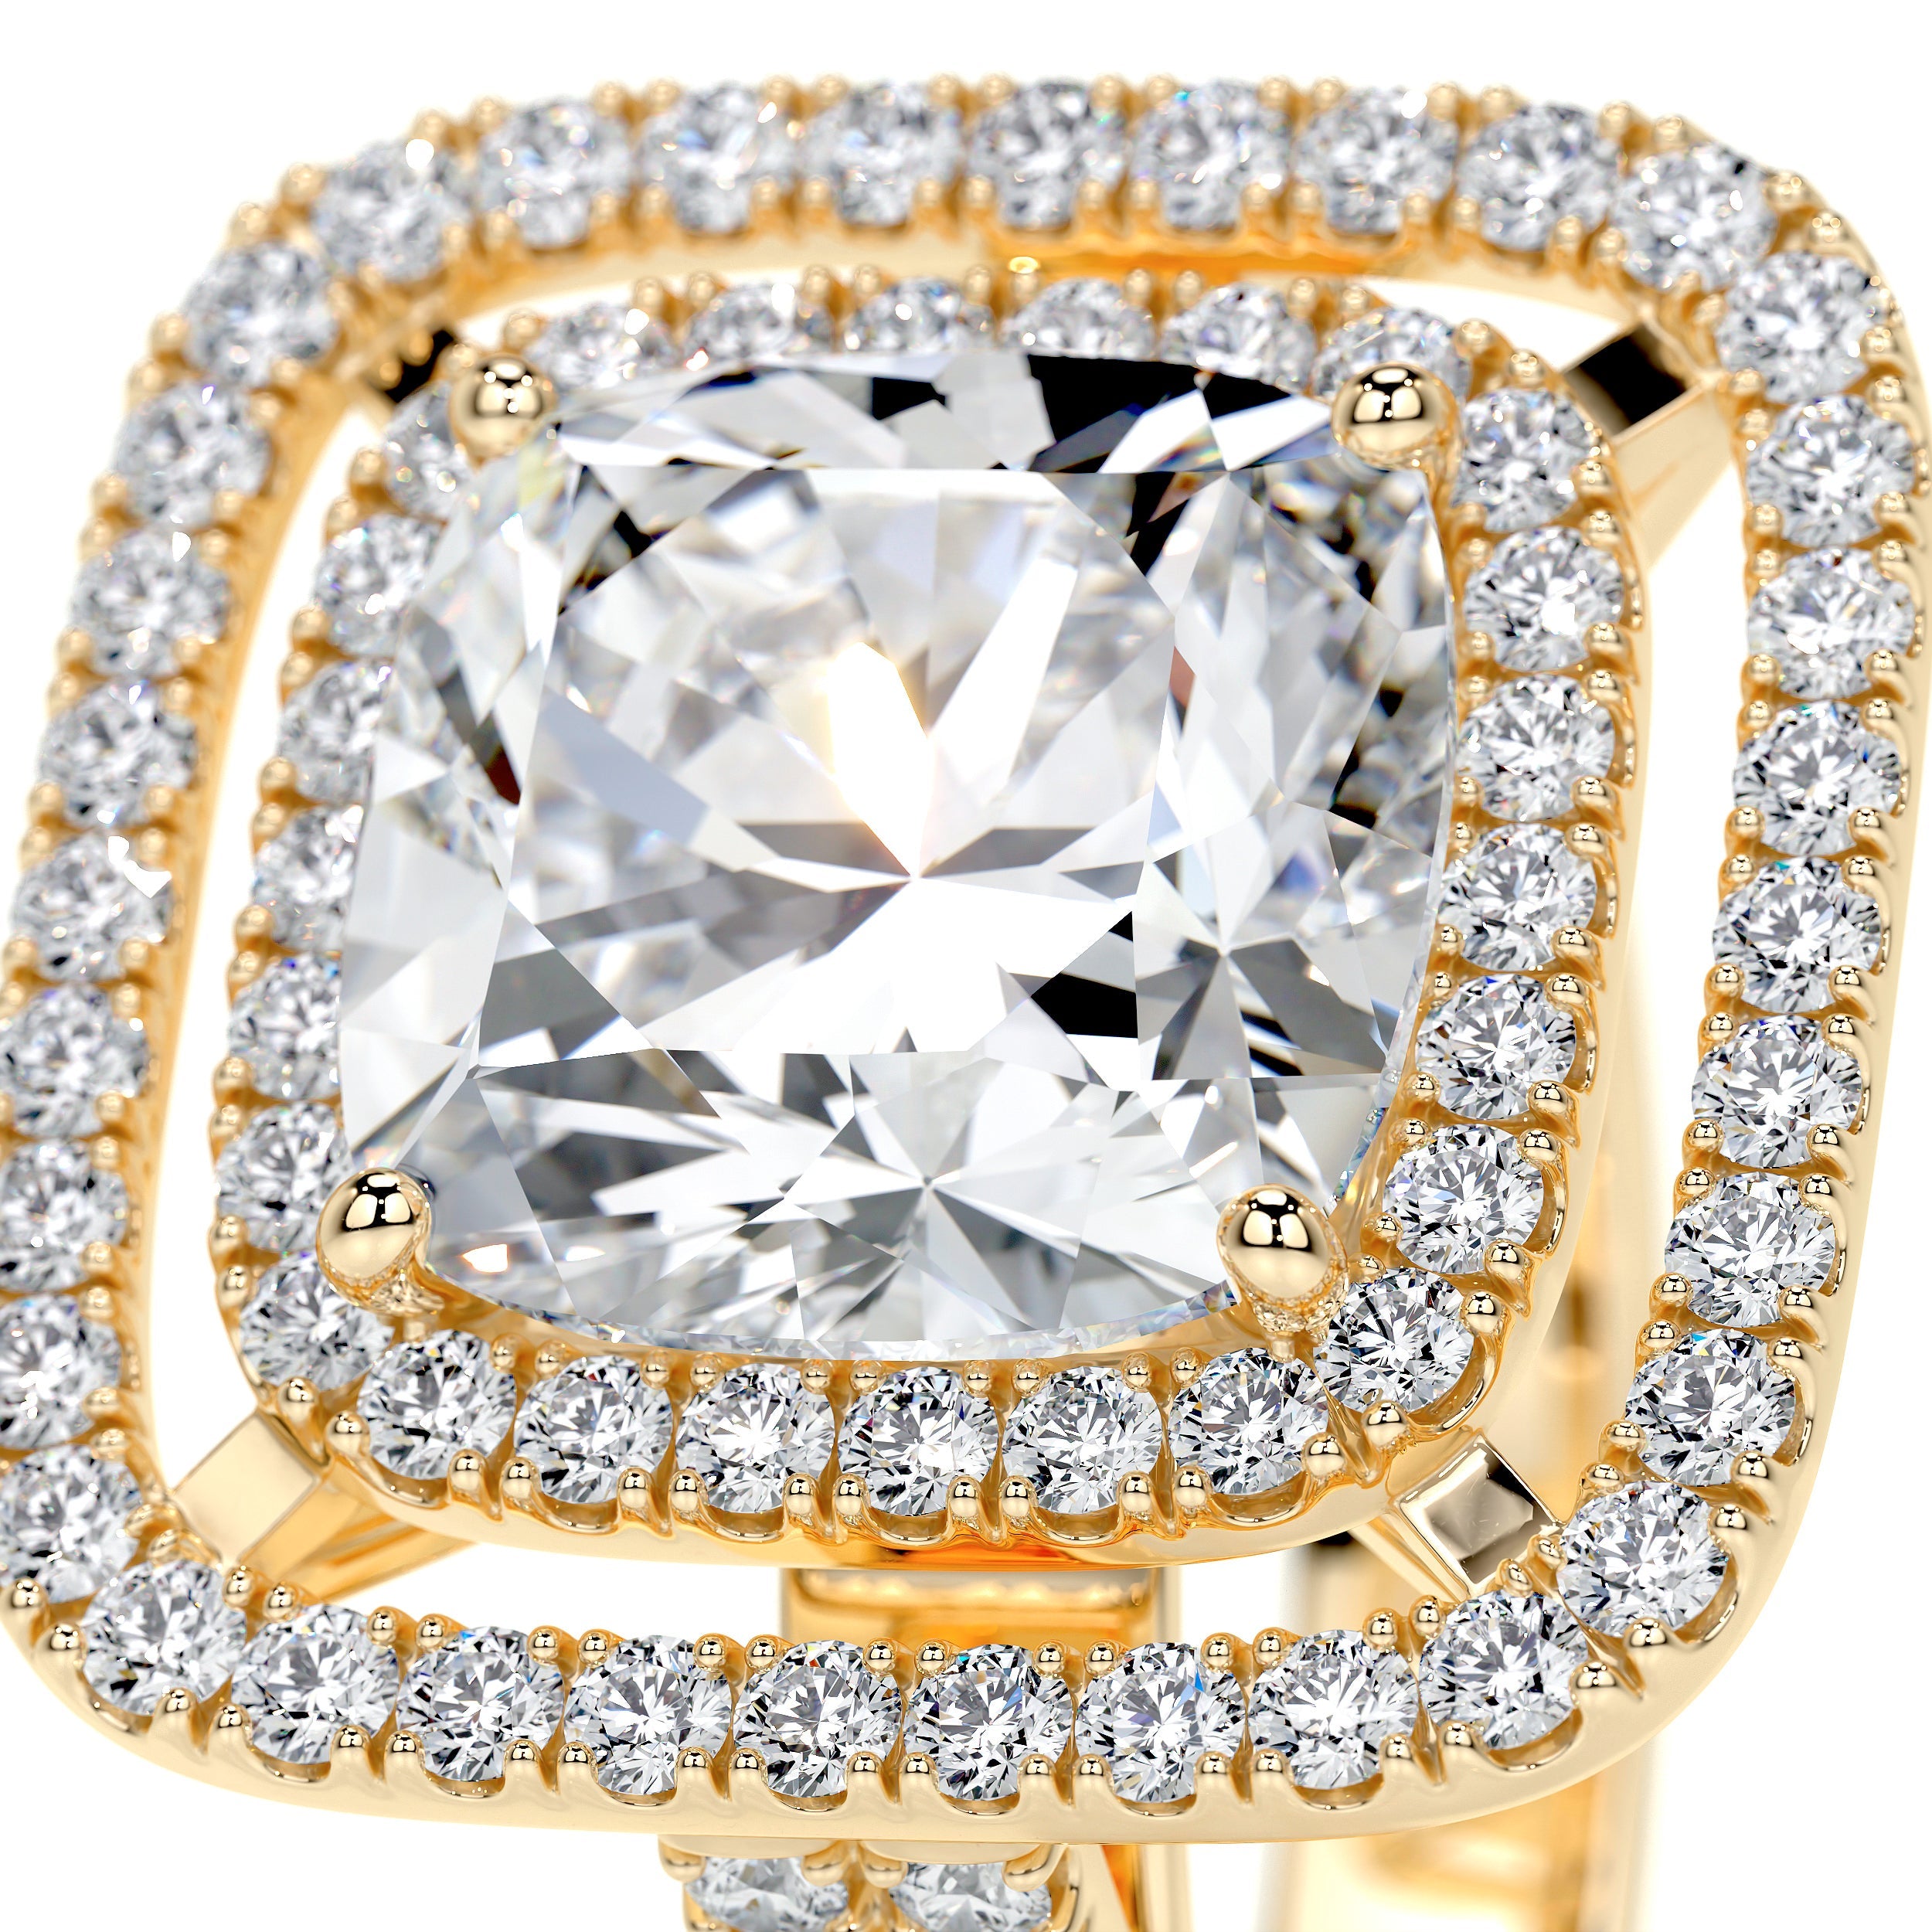 Piper Lab Grown Diamond Ring   (4 Carat) - 18K Yellow Gold